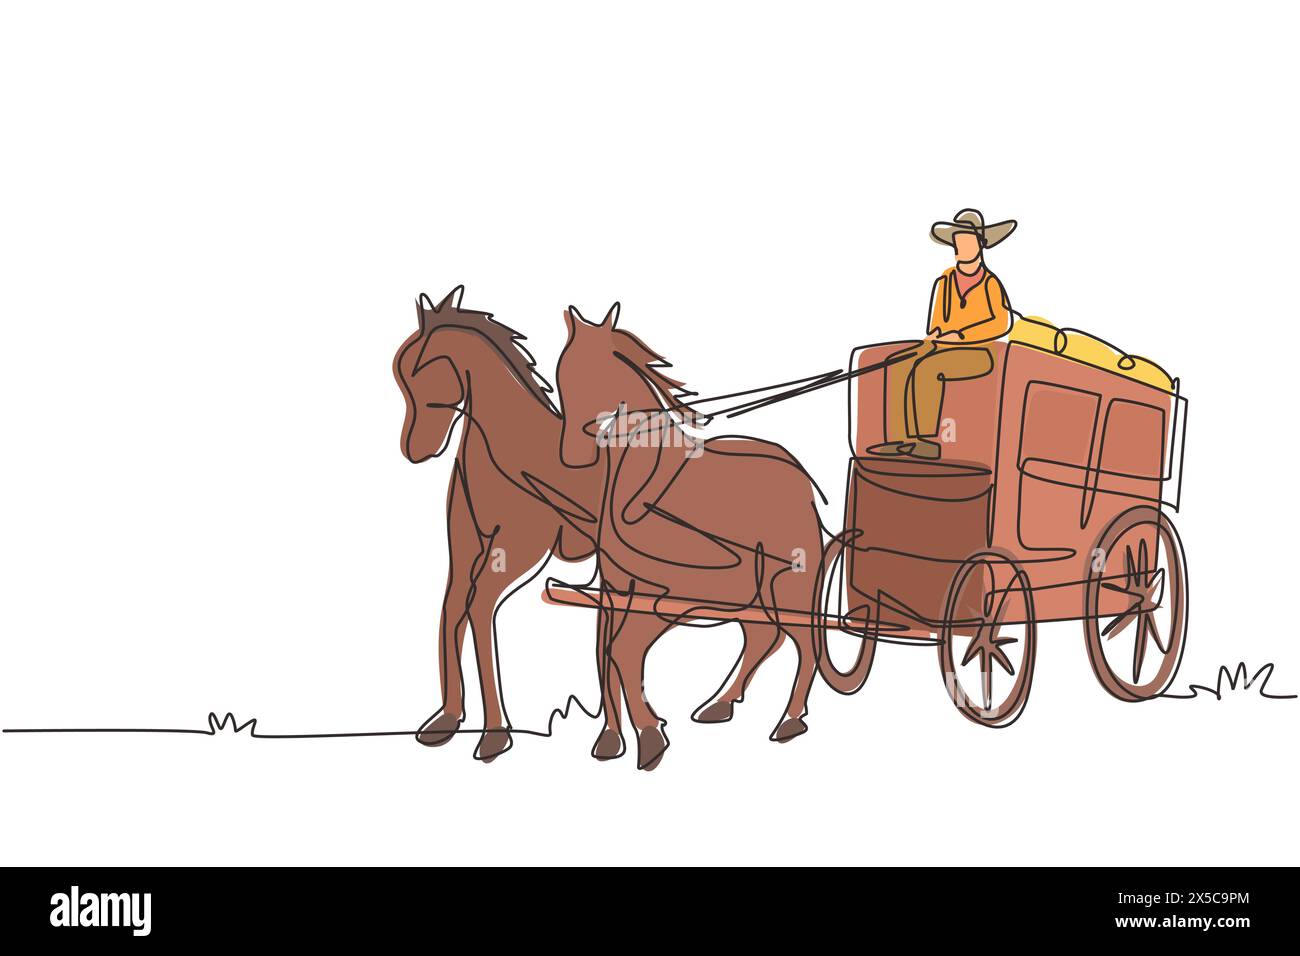 Una linea continua che disegna una vecchia carrozza trainata da cavalli selvaggi del West con pullman. Carrozza Western d'epoca con cavalli. Vagoni selvaggi coperti nel deserto. Illustrazione Vettoriale